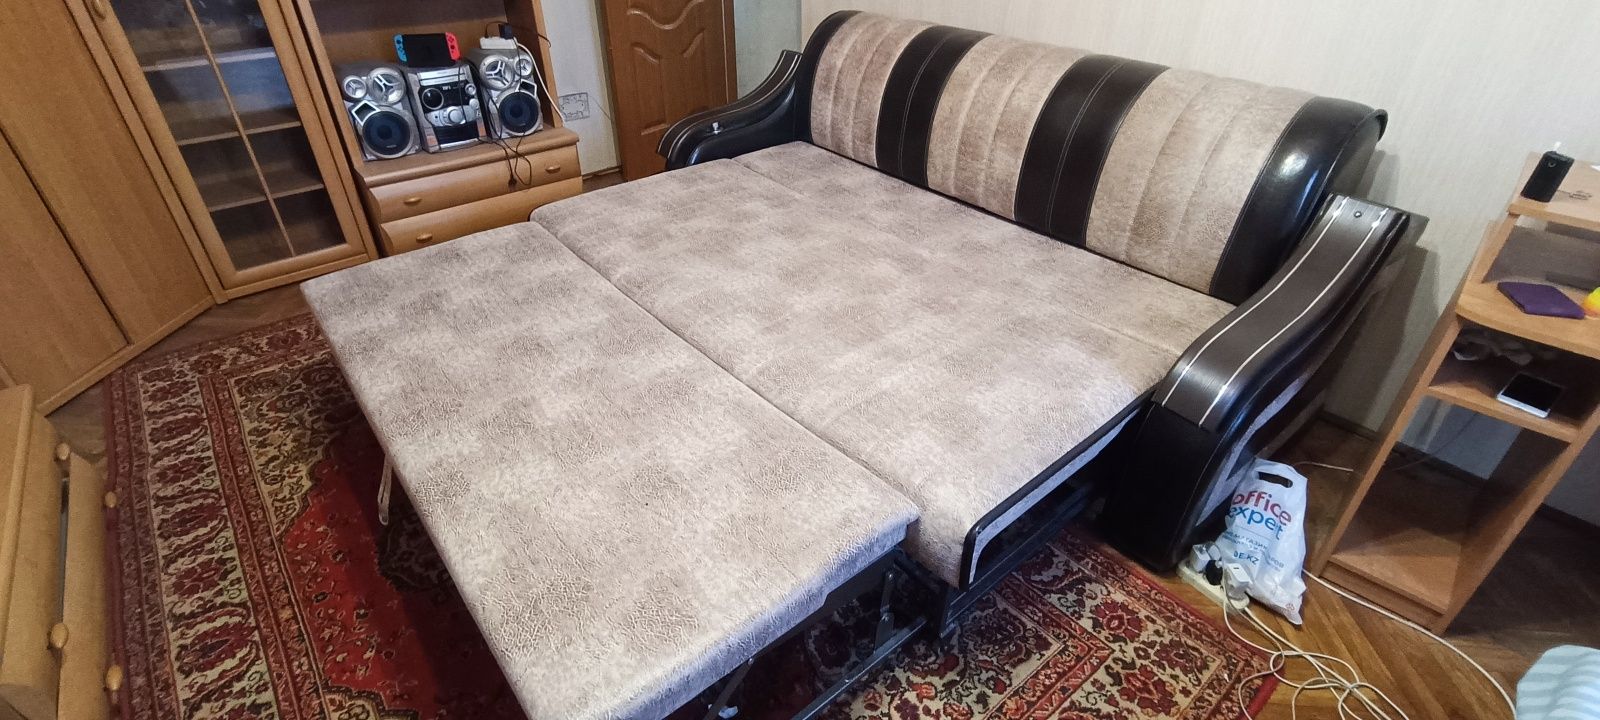 Кожаный диван в состоянии нового